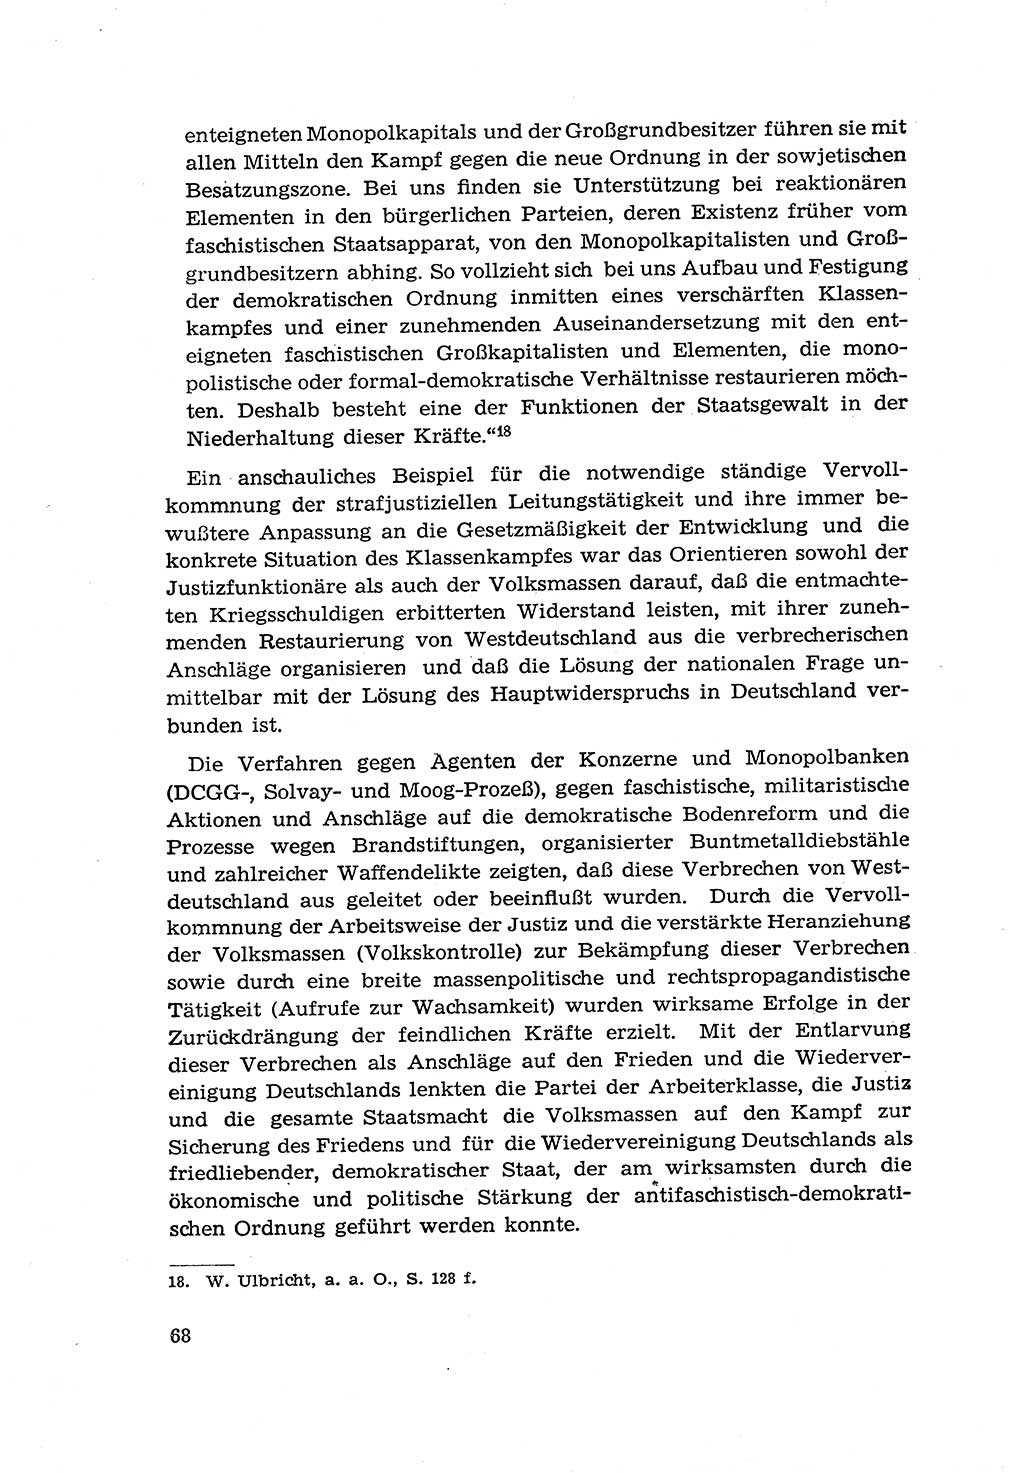 Zur Entwicklung des sozialistischen Strafrechts der Deutschen Demokratischen Republik (DDR) 1960, Seite 68 (Entw. soz. Strafr. DDR 1960, S. 68)